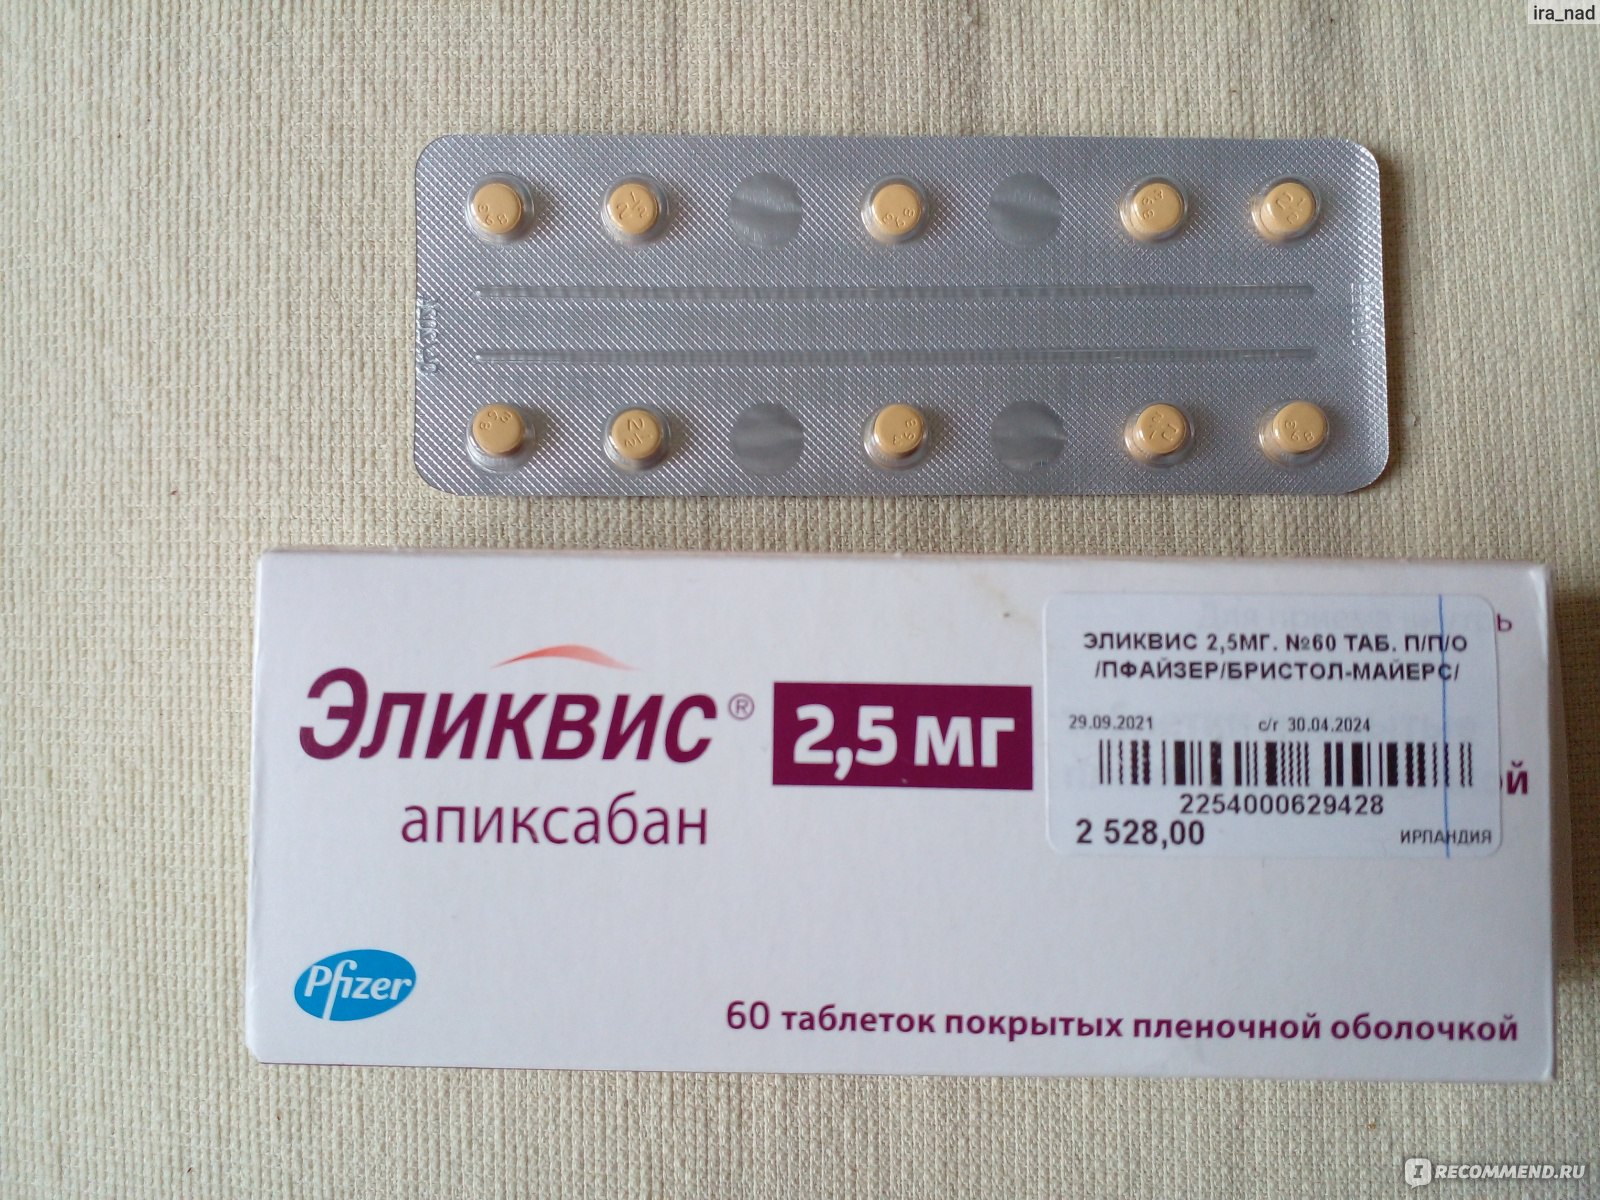 Антикоагулянт Pfizer Эликвис апиксабан 5 мг - «Зачем принимать эликвис .